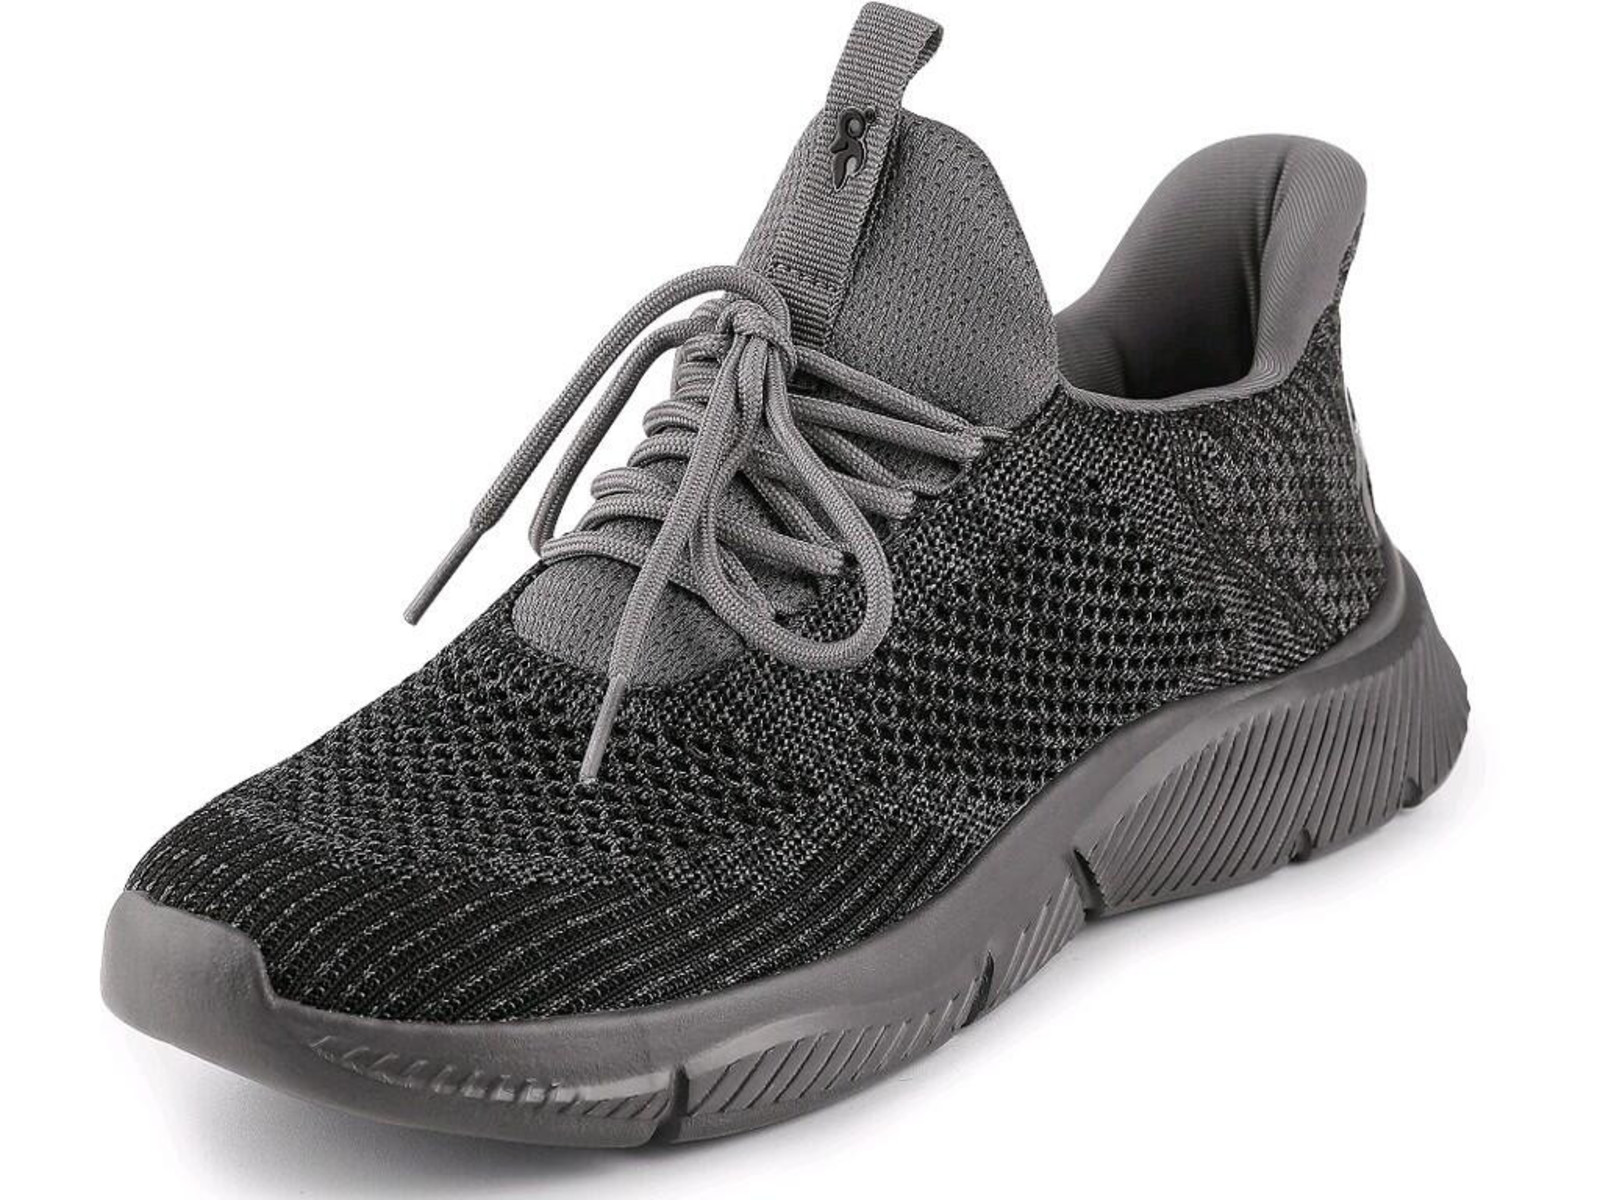 Voľnočasová obuv CXS Island Barbados - veľkosť: 44, farba: sivá/čierna